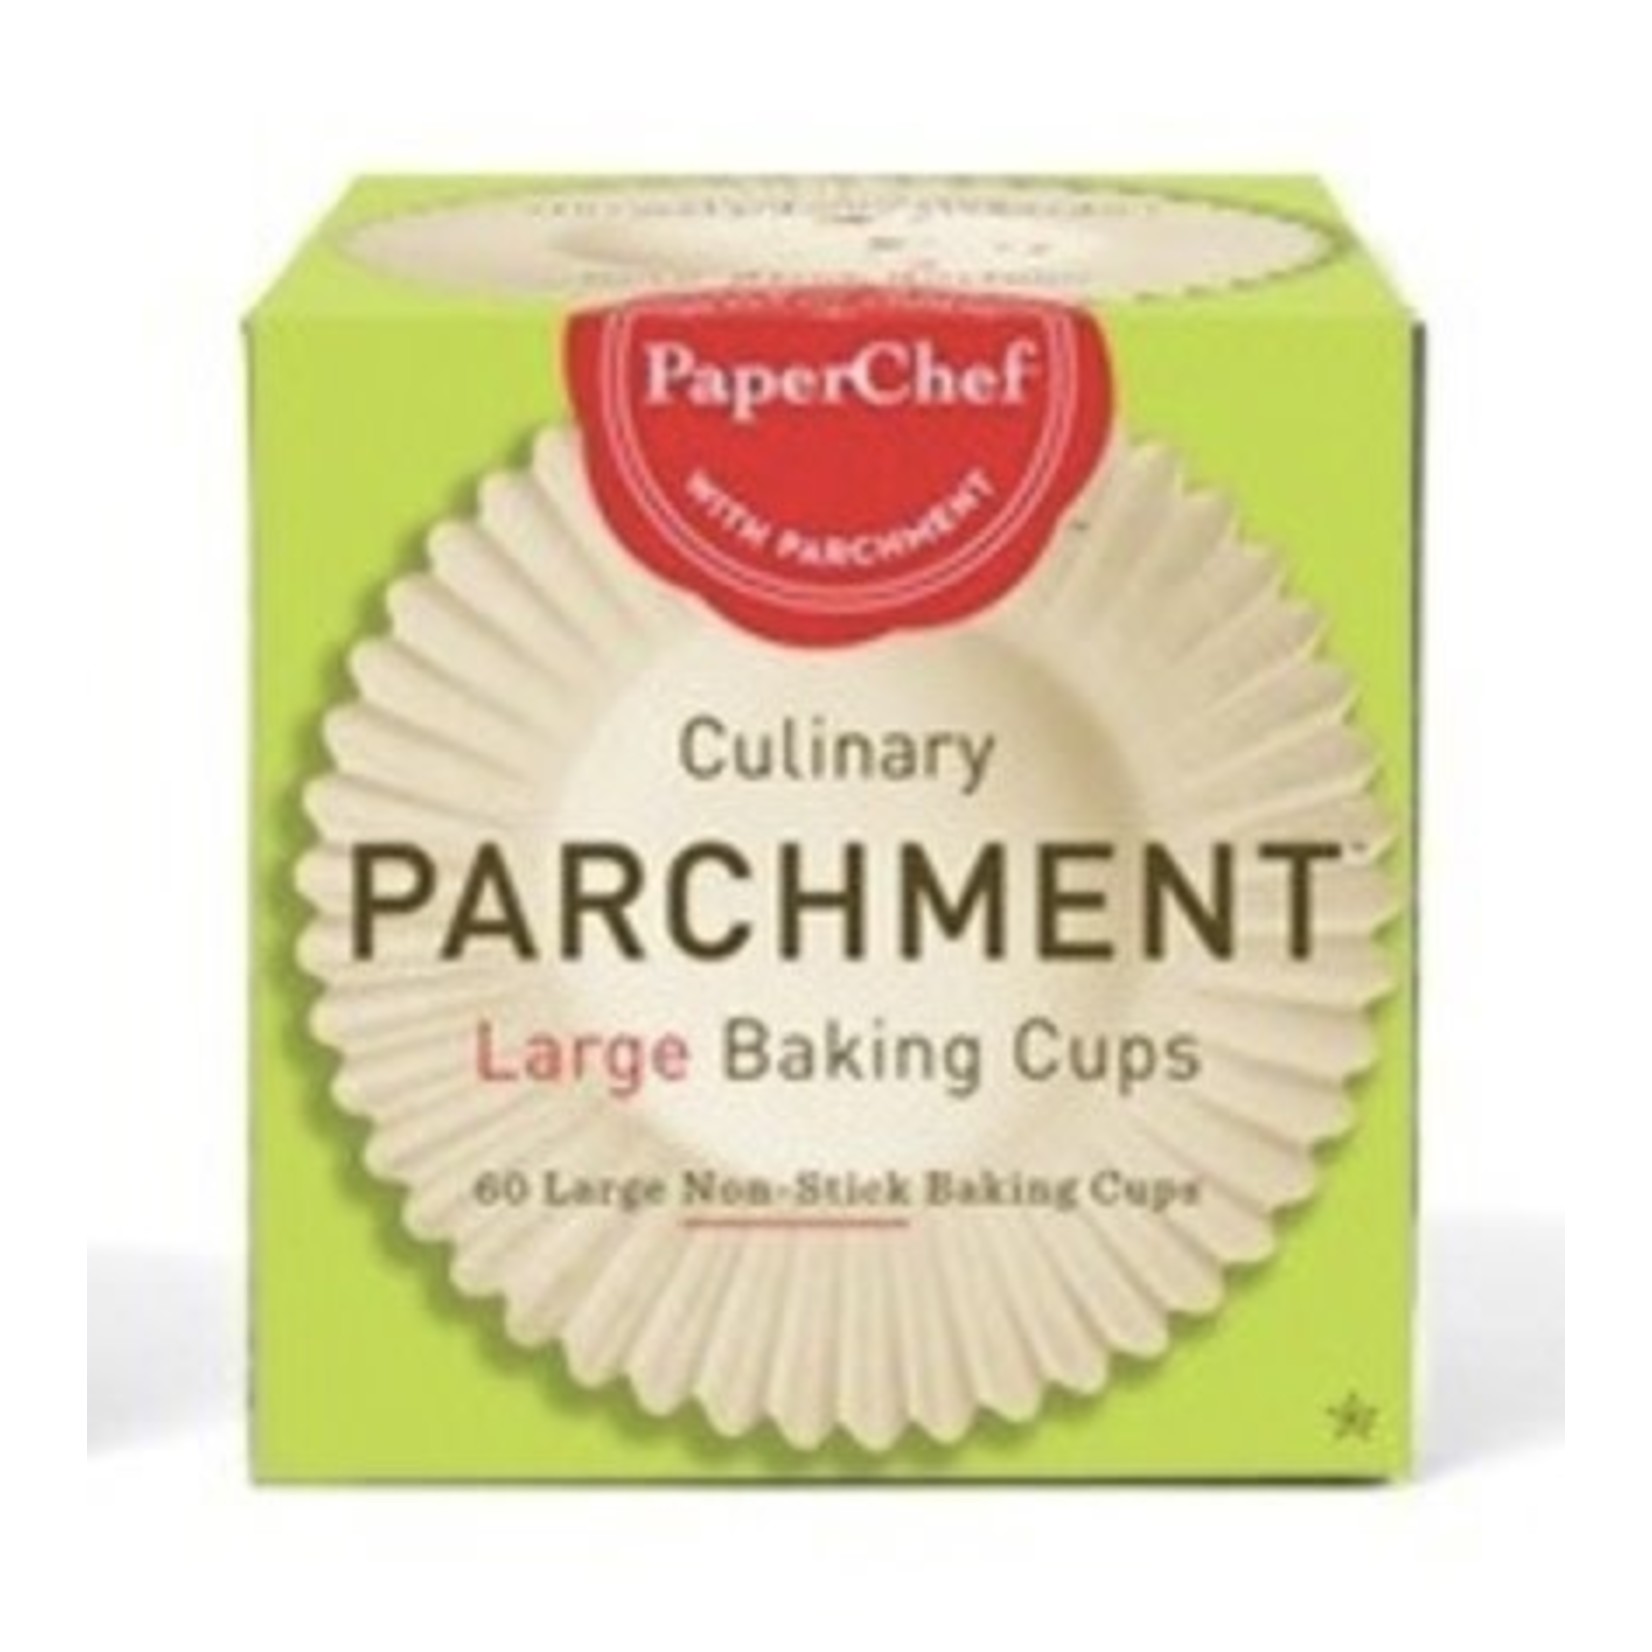 DAVID SHAW PAPERCHEF Parchment Baking Cups 60 - Large